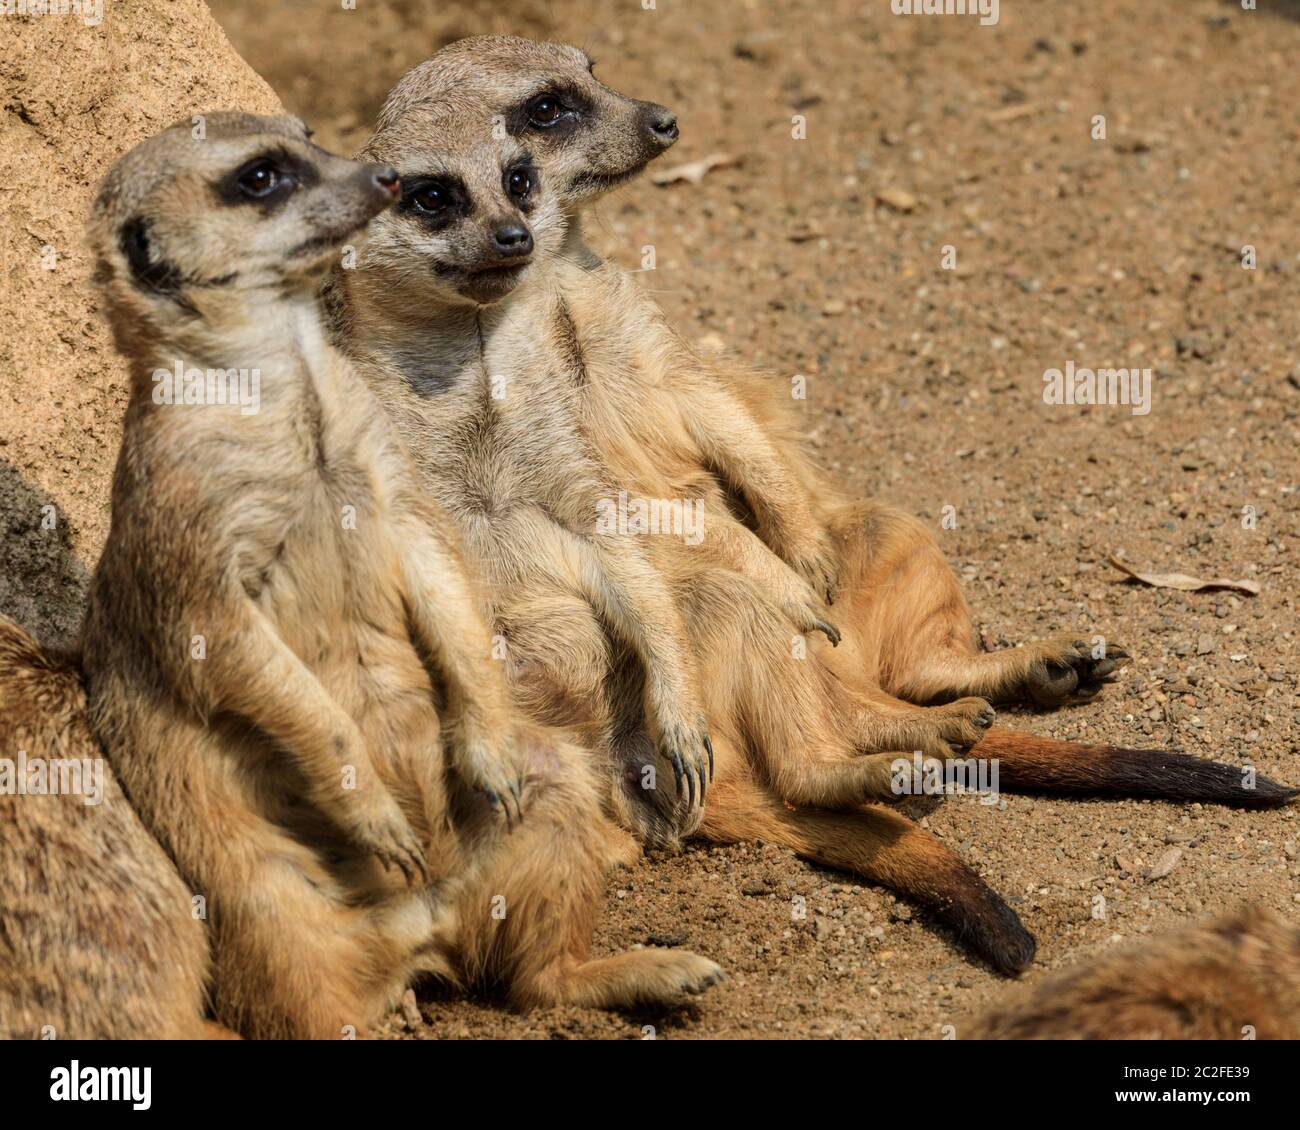 Zoom Erlebniswelt, Gelsenkirchen, Germania. 17 Giugno 2020. Tre meerkat (Suricata suricatta) si lazano intorno al sole. Gli animali si rilassano e si rinfrescano con il caldo e l'umido del Nord Reno-Westfalia oggi. Credit: Imageplotter/Alamy Live News Foto Stock